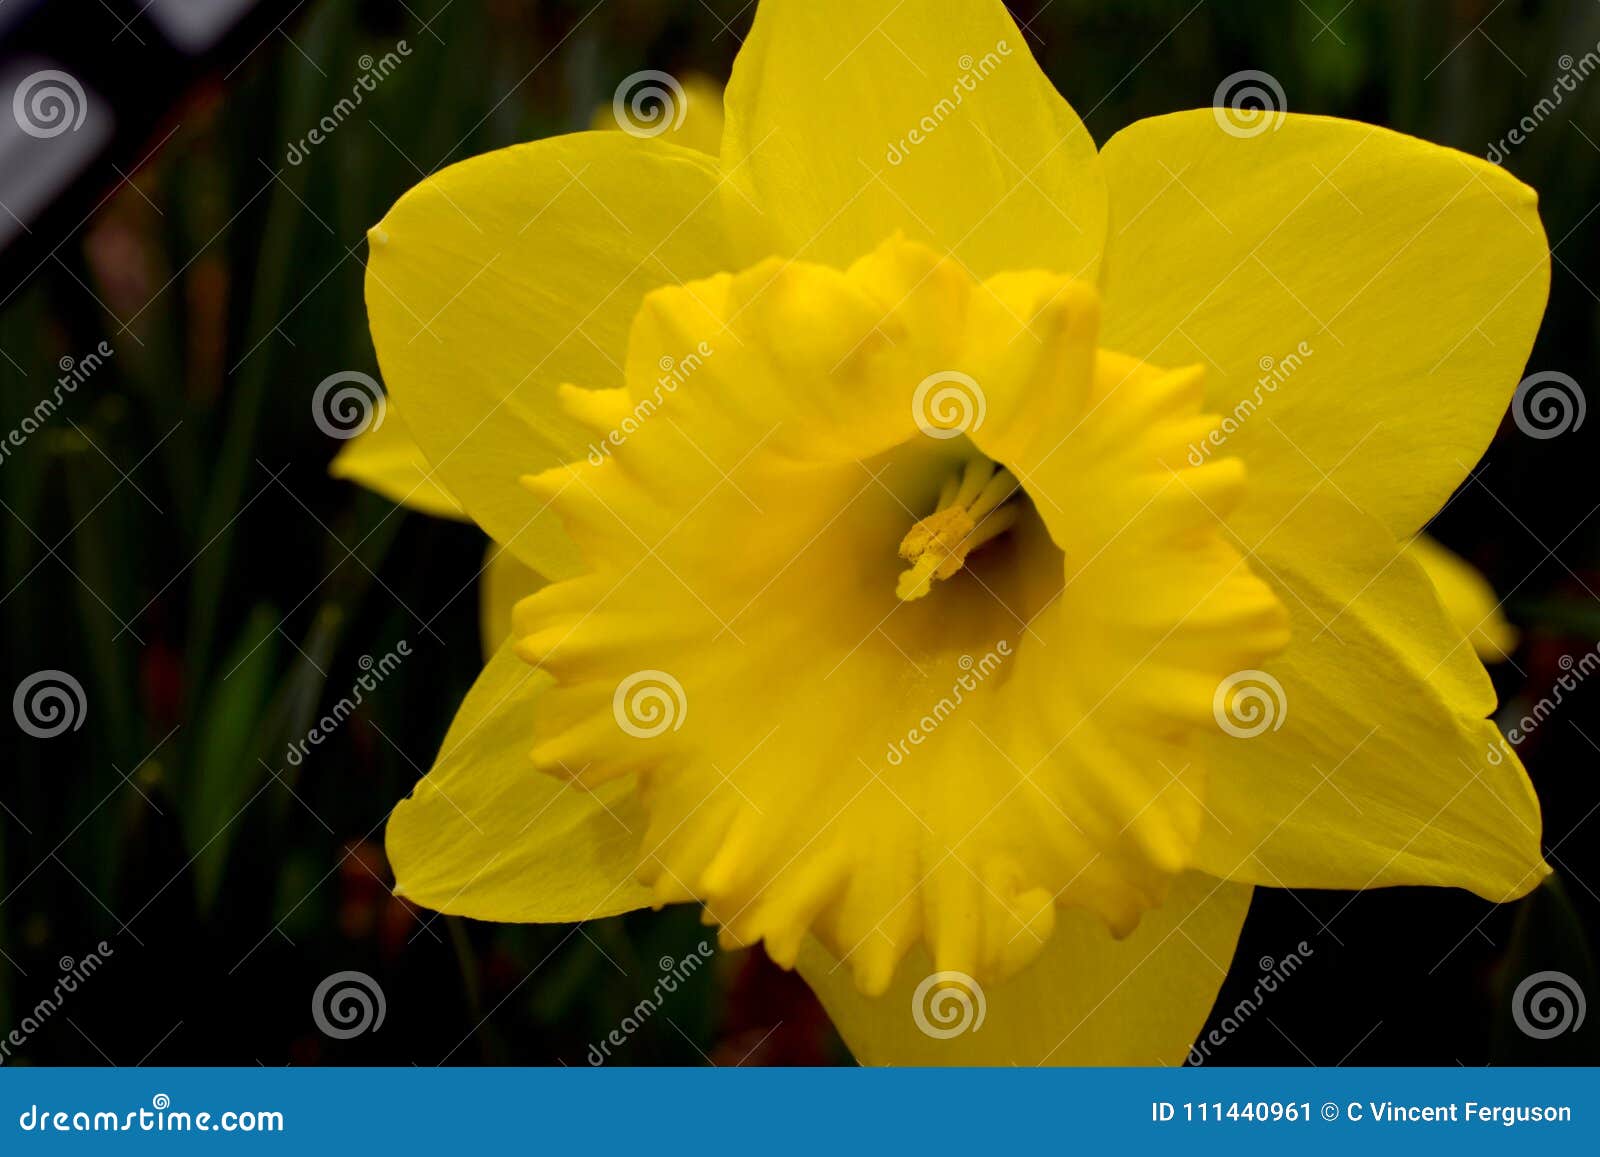 黄色黄水仙花喇叭库存图片 图片包括有黄色黄水仙花喇叭